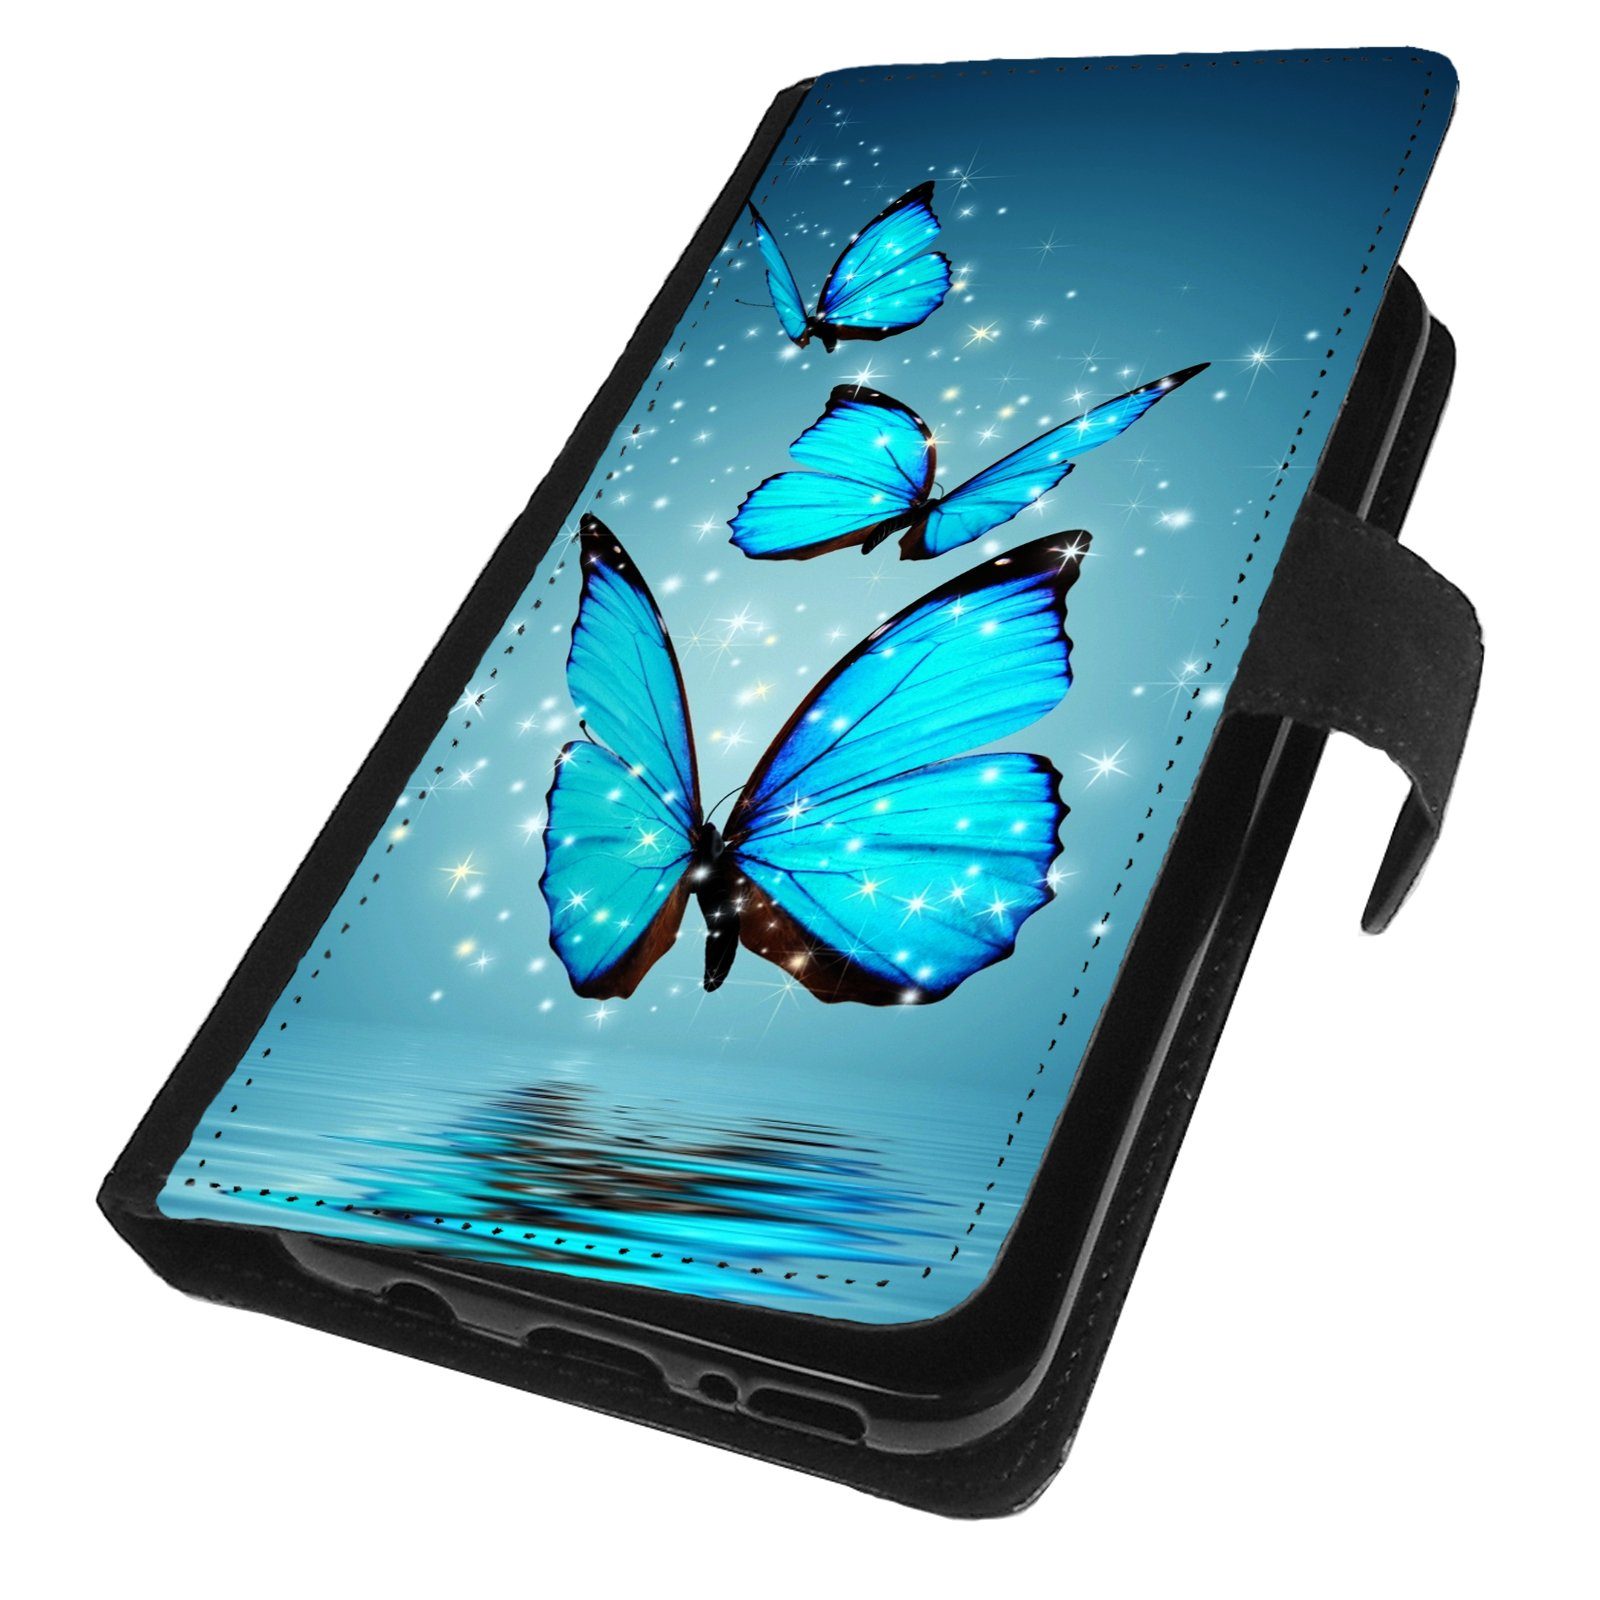 Traumhuelle Handyhülle Für Samsung Galaxy A52 / A52S 5G Hülle Motiv 4  Schmetterling, Handytasche Schutzhülle Flip Case Wallet Etui Cover